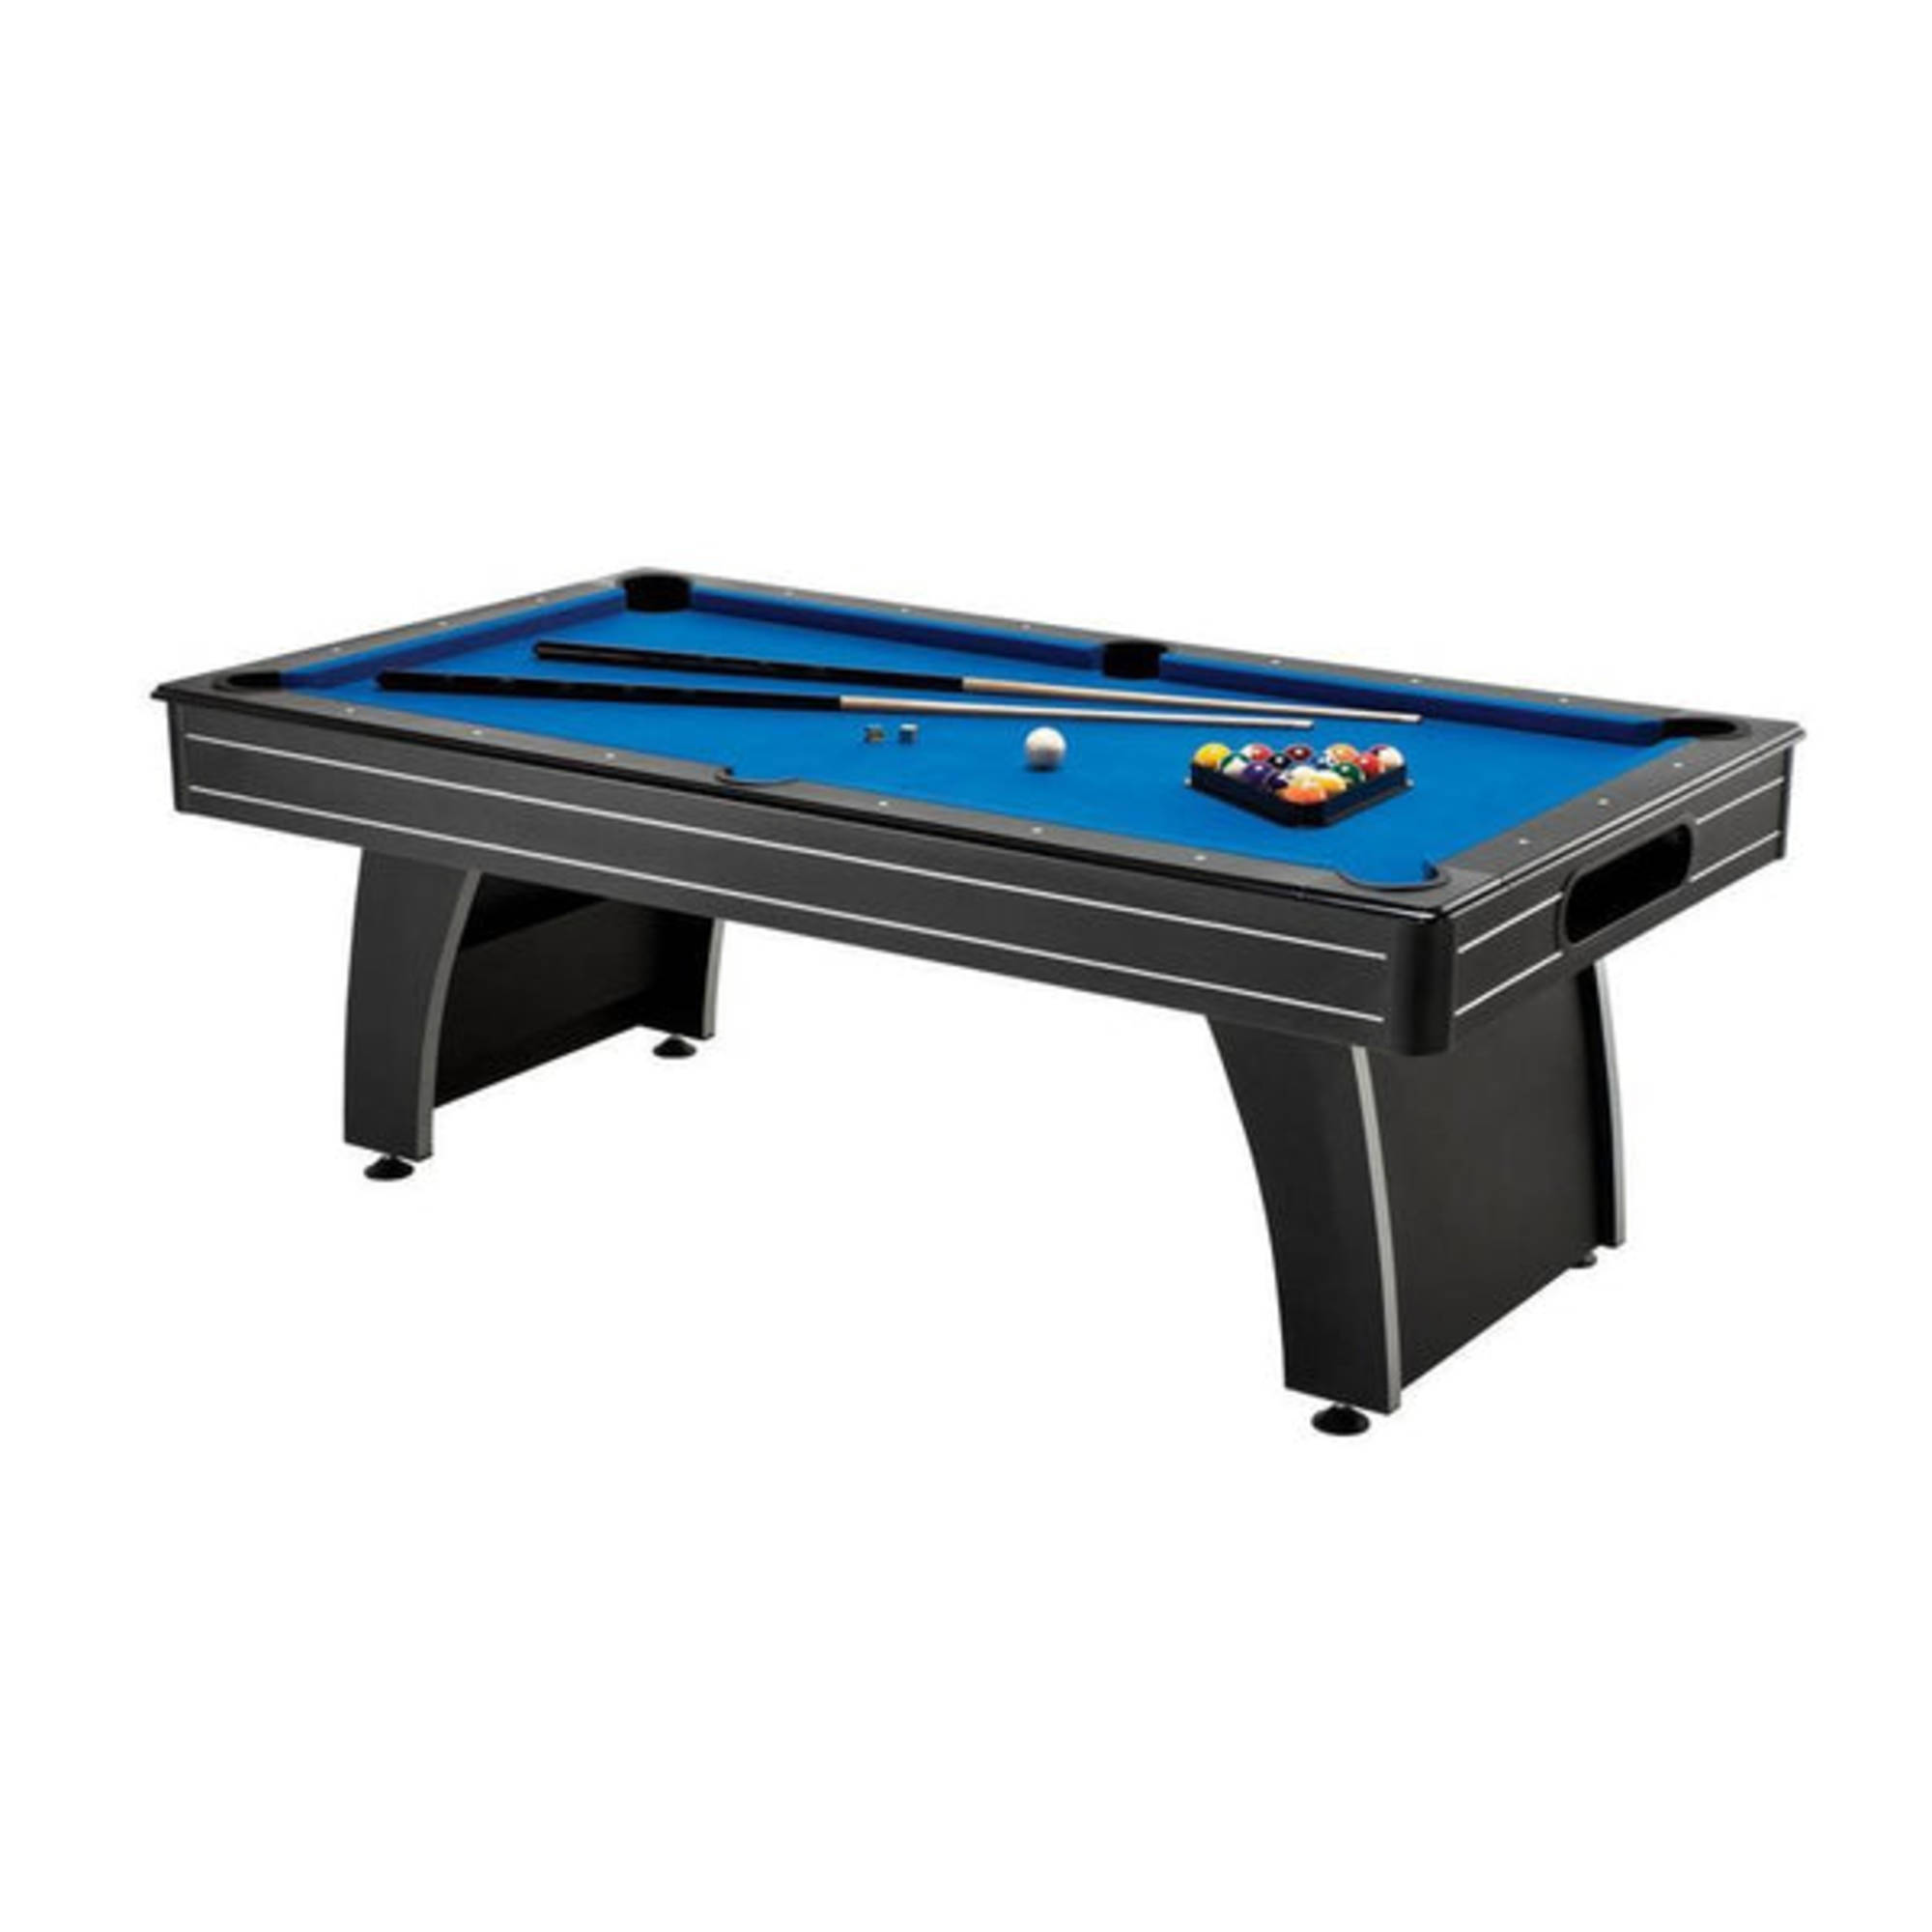 Fat Cat Tucson 7' Billiard Pool Table with Ball Return